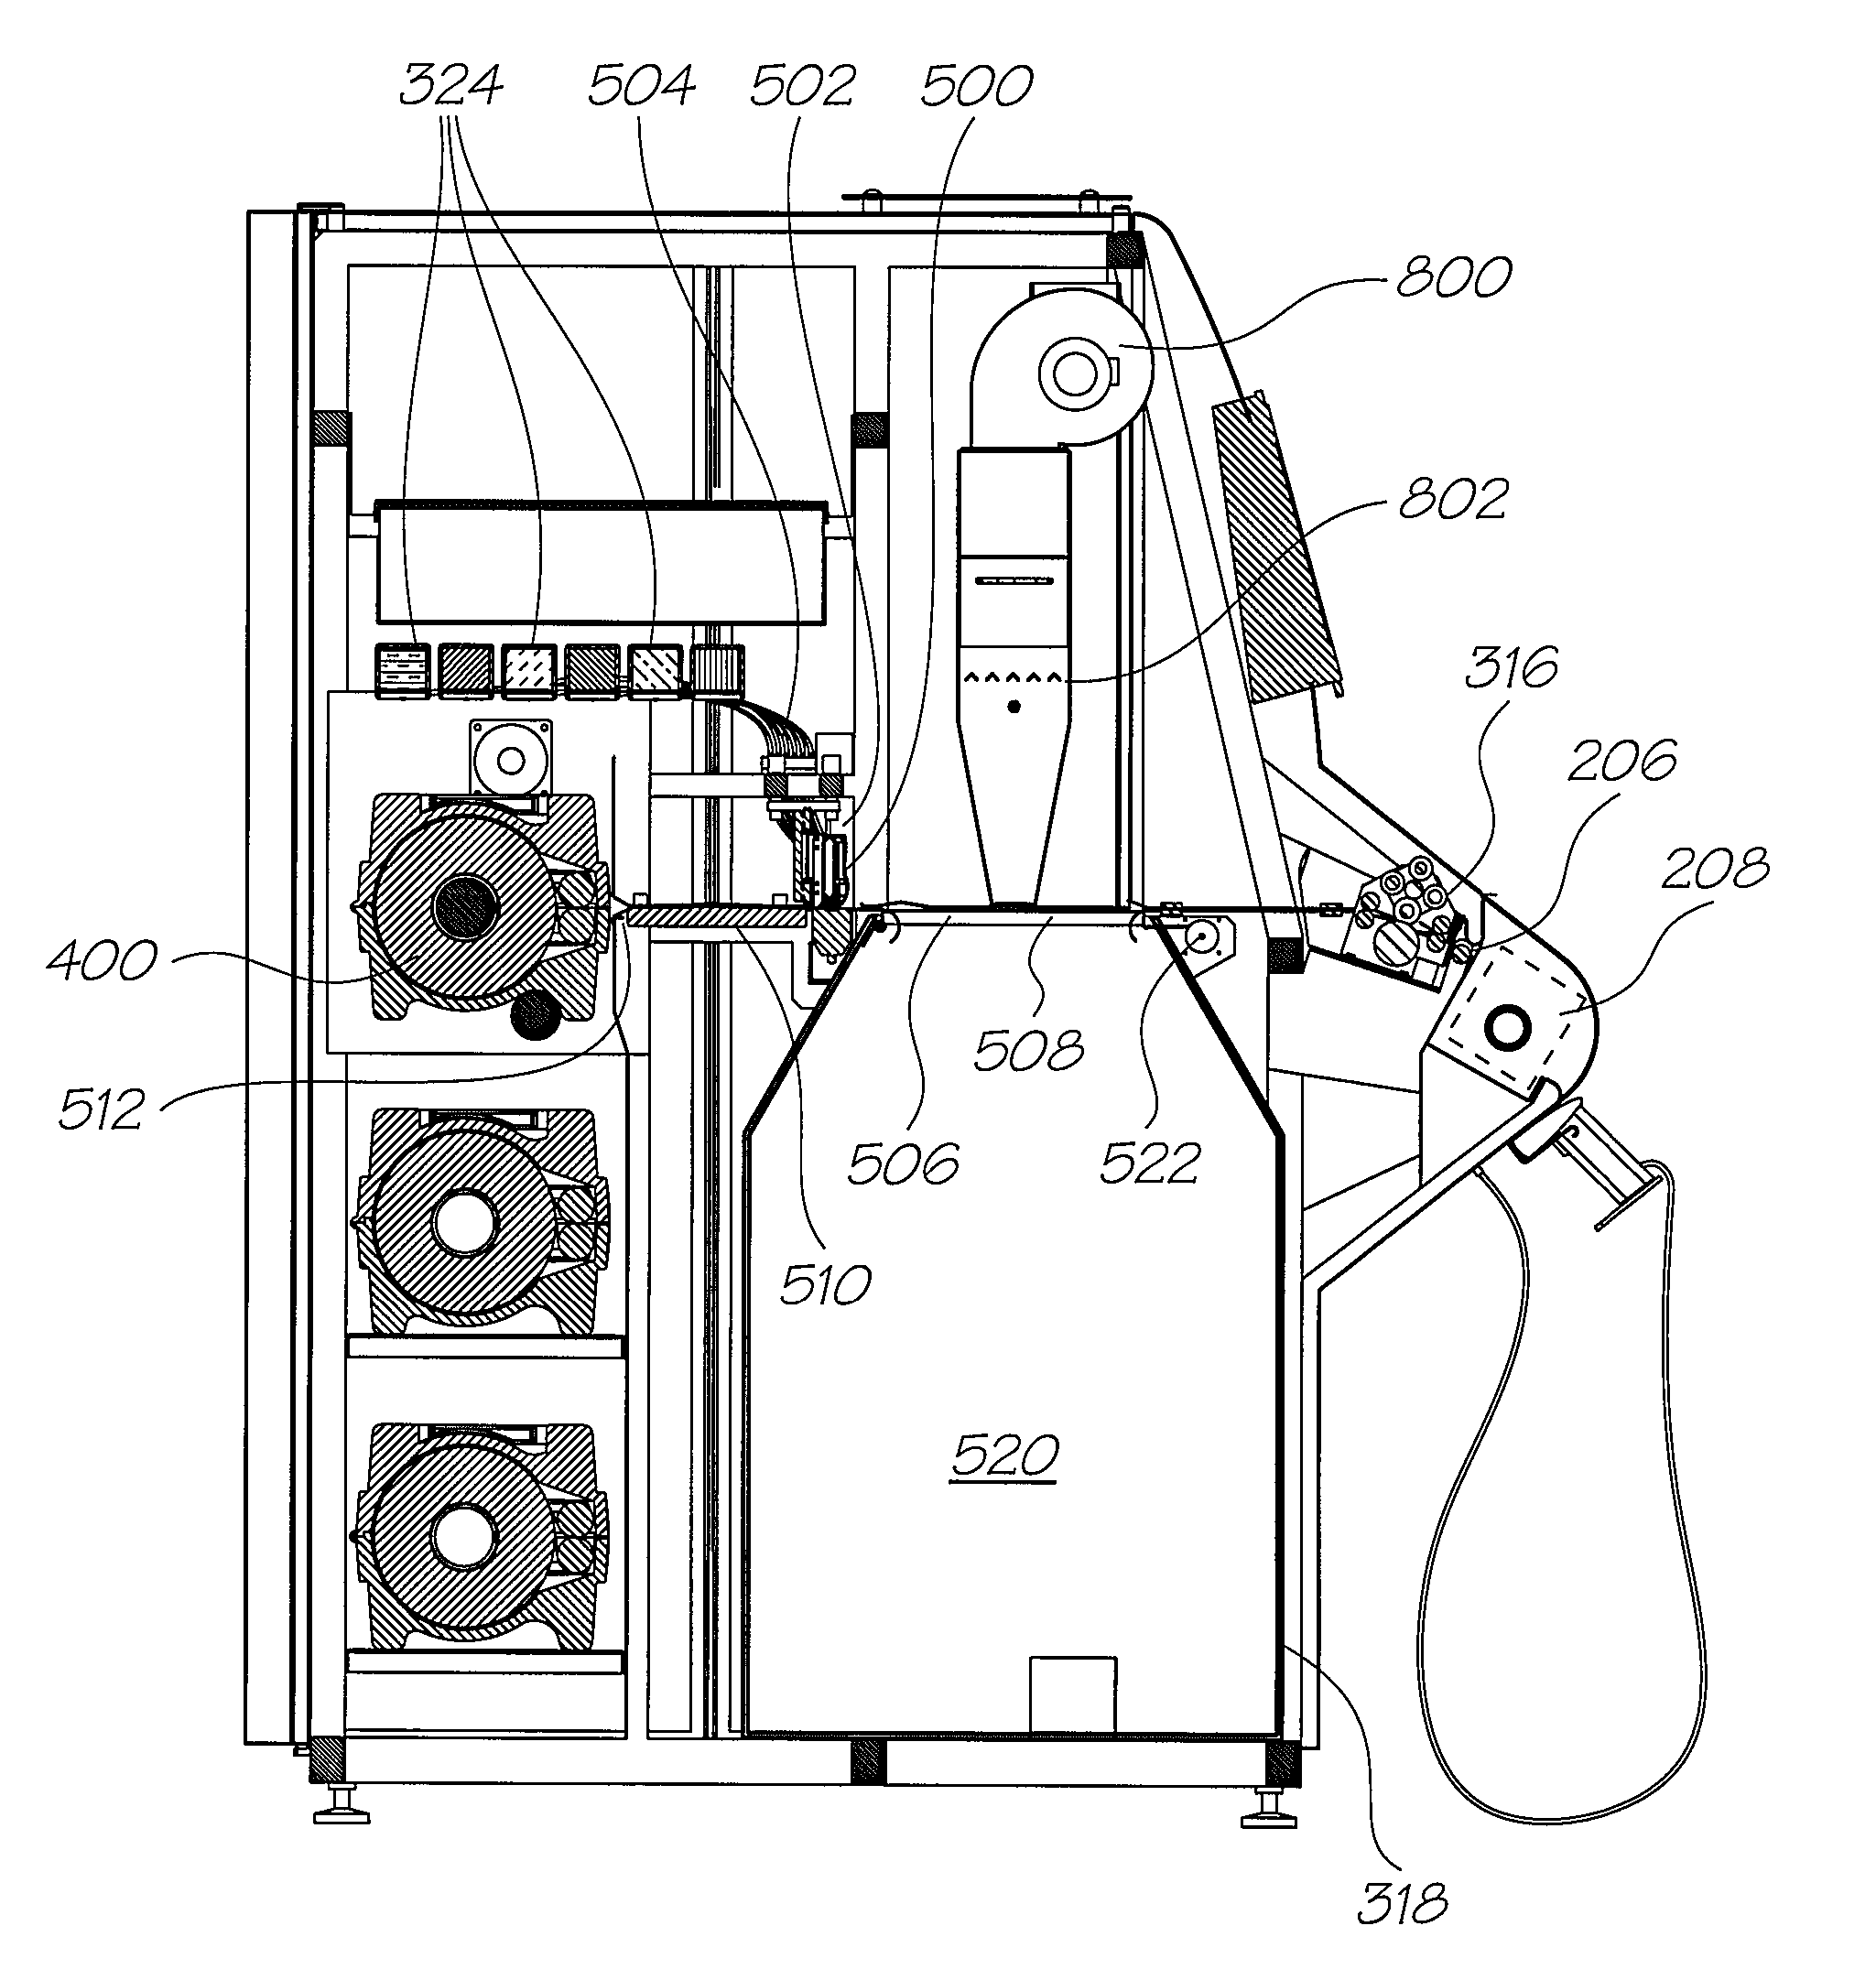 Printer incorporating a cutter module